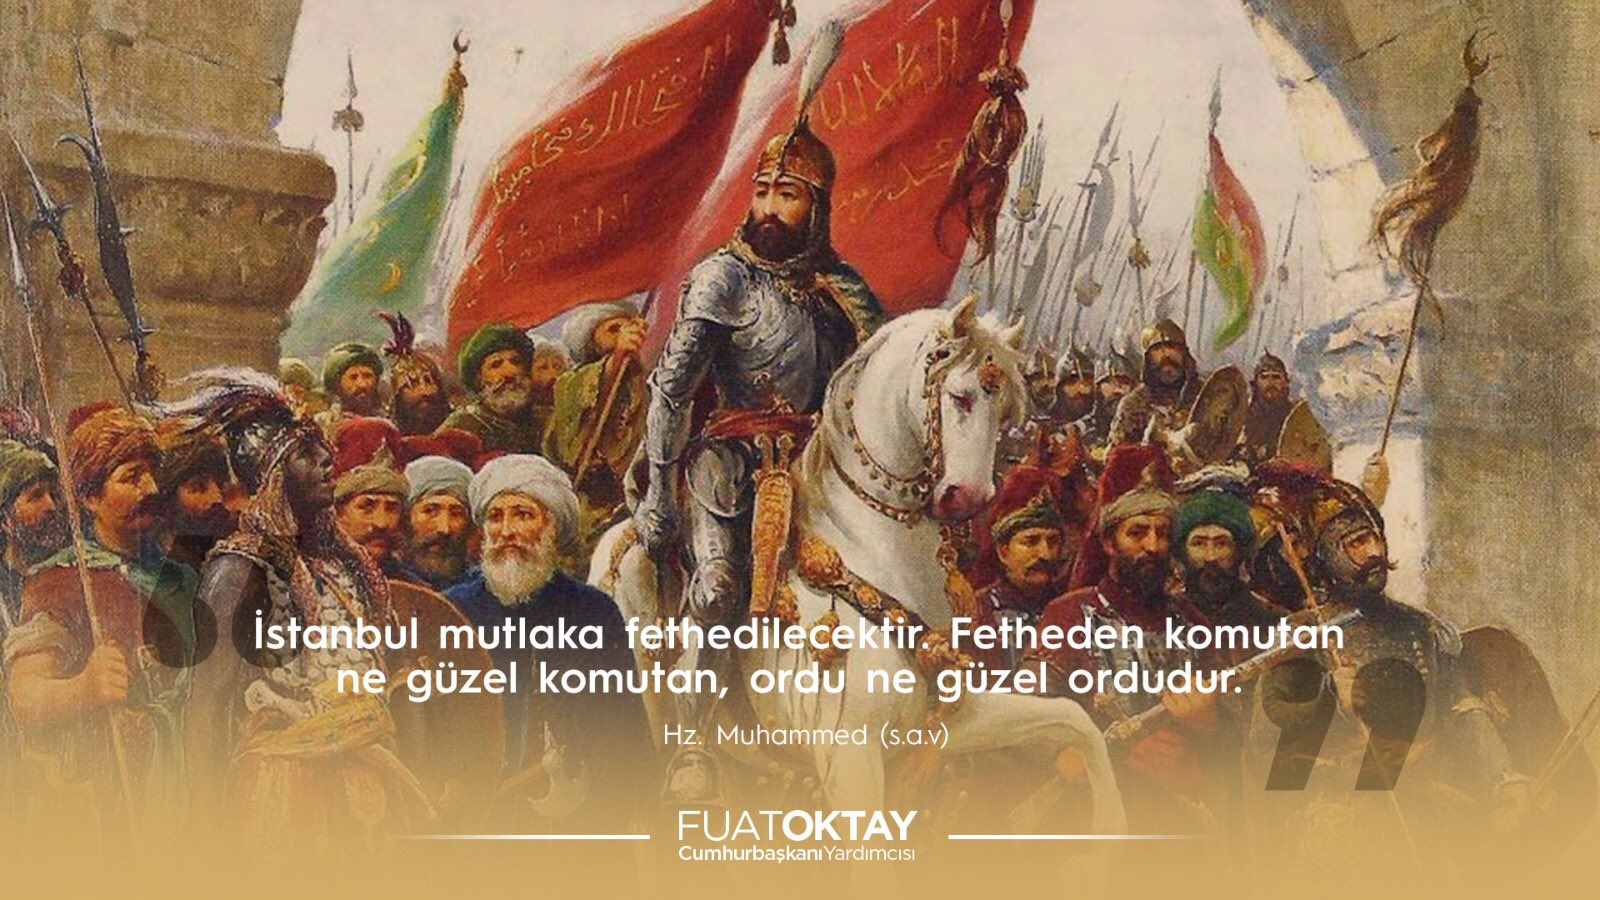 Il 29 maggio a Istanbul e l’anniversario della conquista